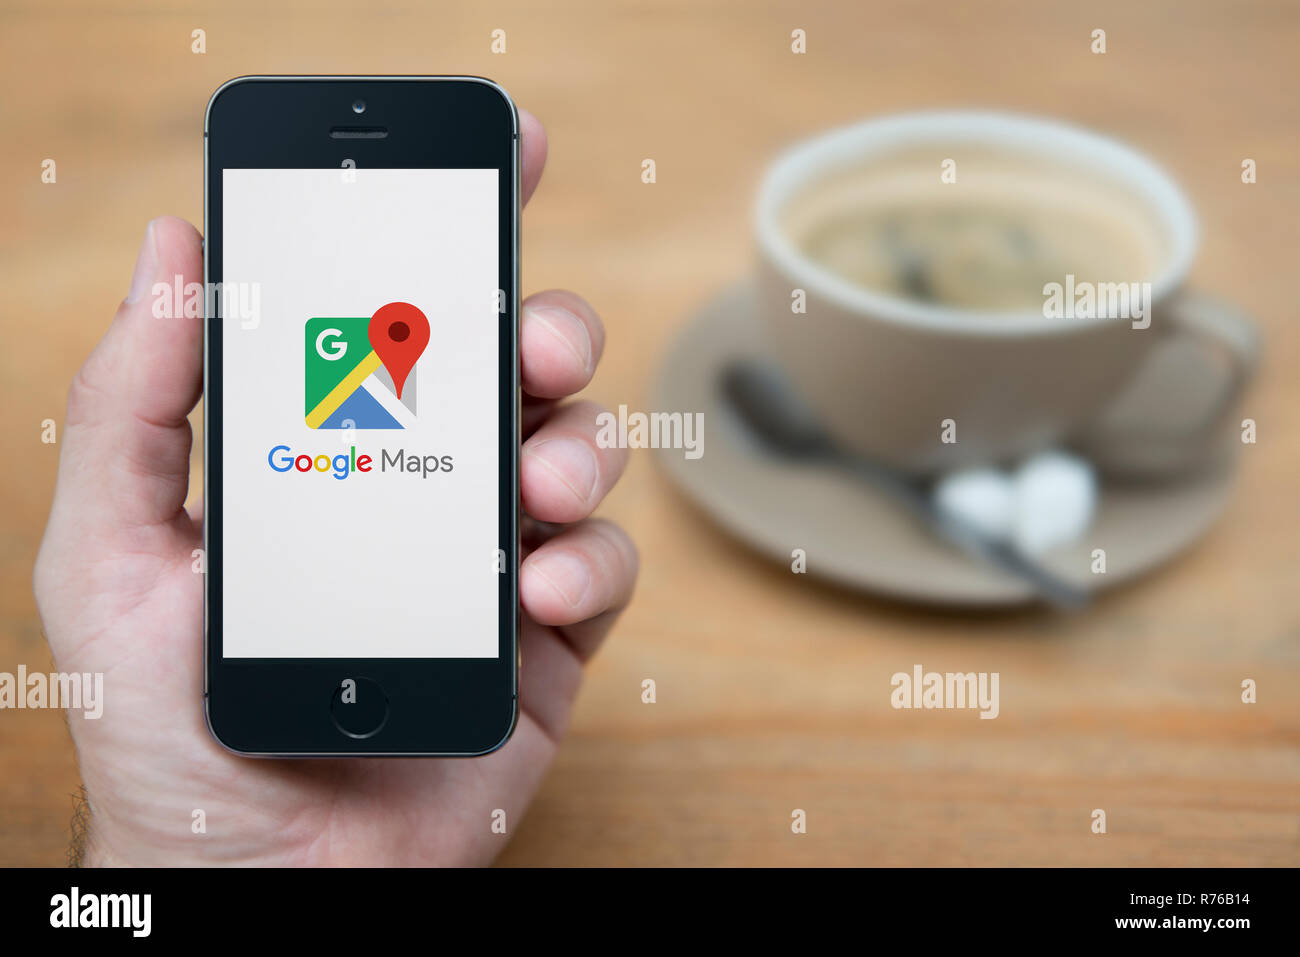 Un homme se penche sur son iPhone qui affiche le logo Google Maps (usage éditorial uniquement). Banque D'Images